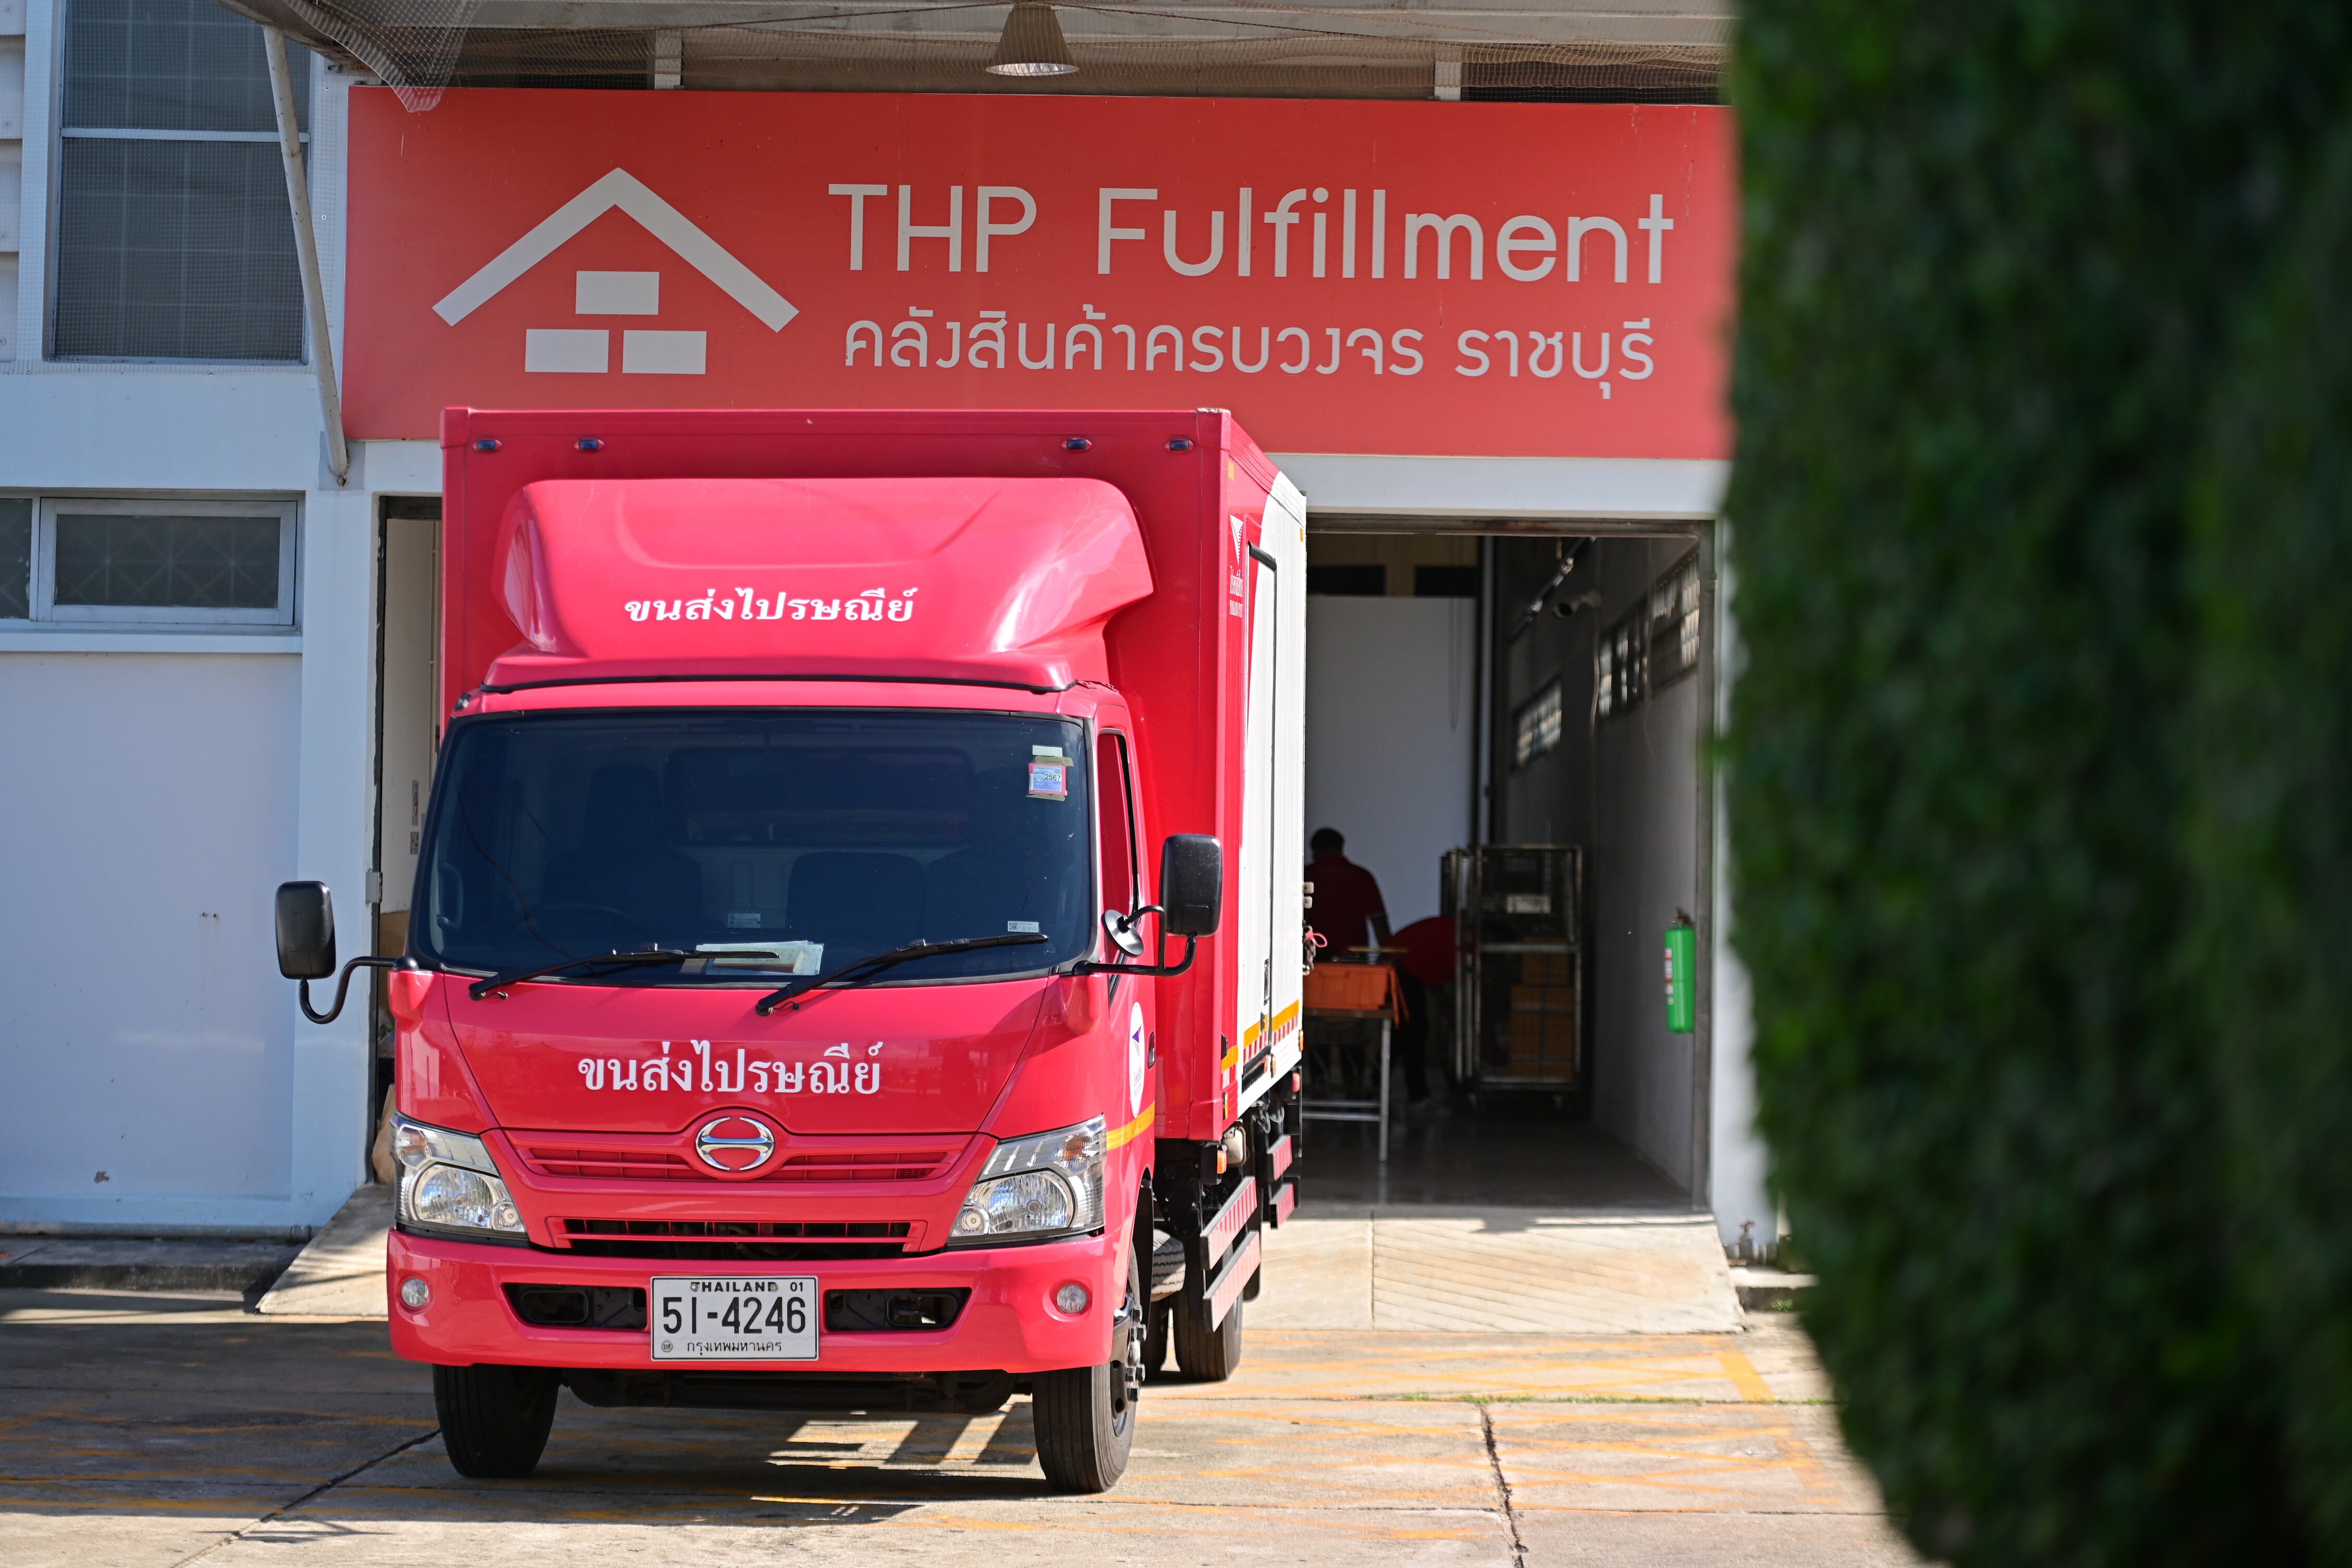 ไปรษณีย์ไทย รุก 8 จังหวัดยุทธศาสตร์ เปิดคลังสินค้าพื้นที่กว่า 3,000 ตารางเมตร หนุนรับภาคธุรกิจ - อีคอมเมิร์ซขยายตัวปี 67